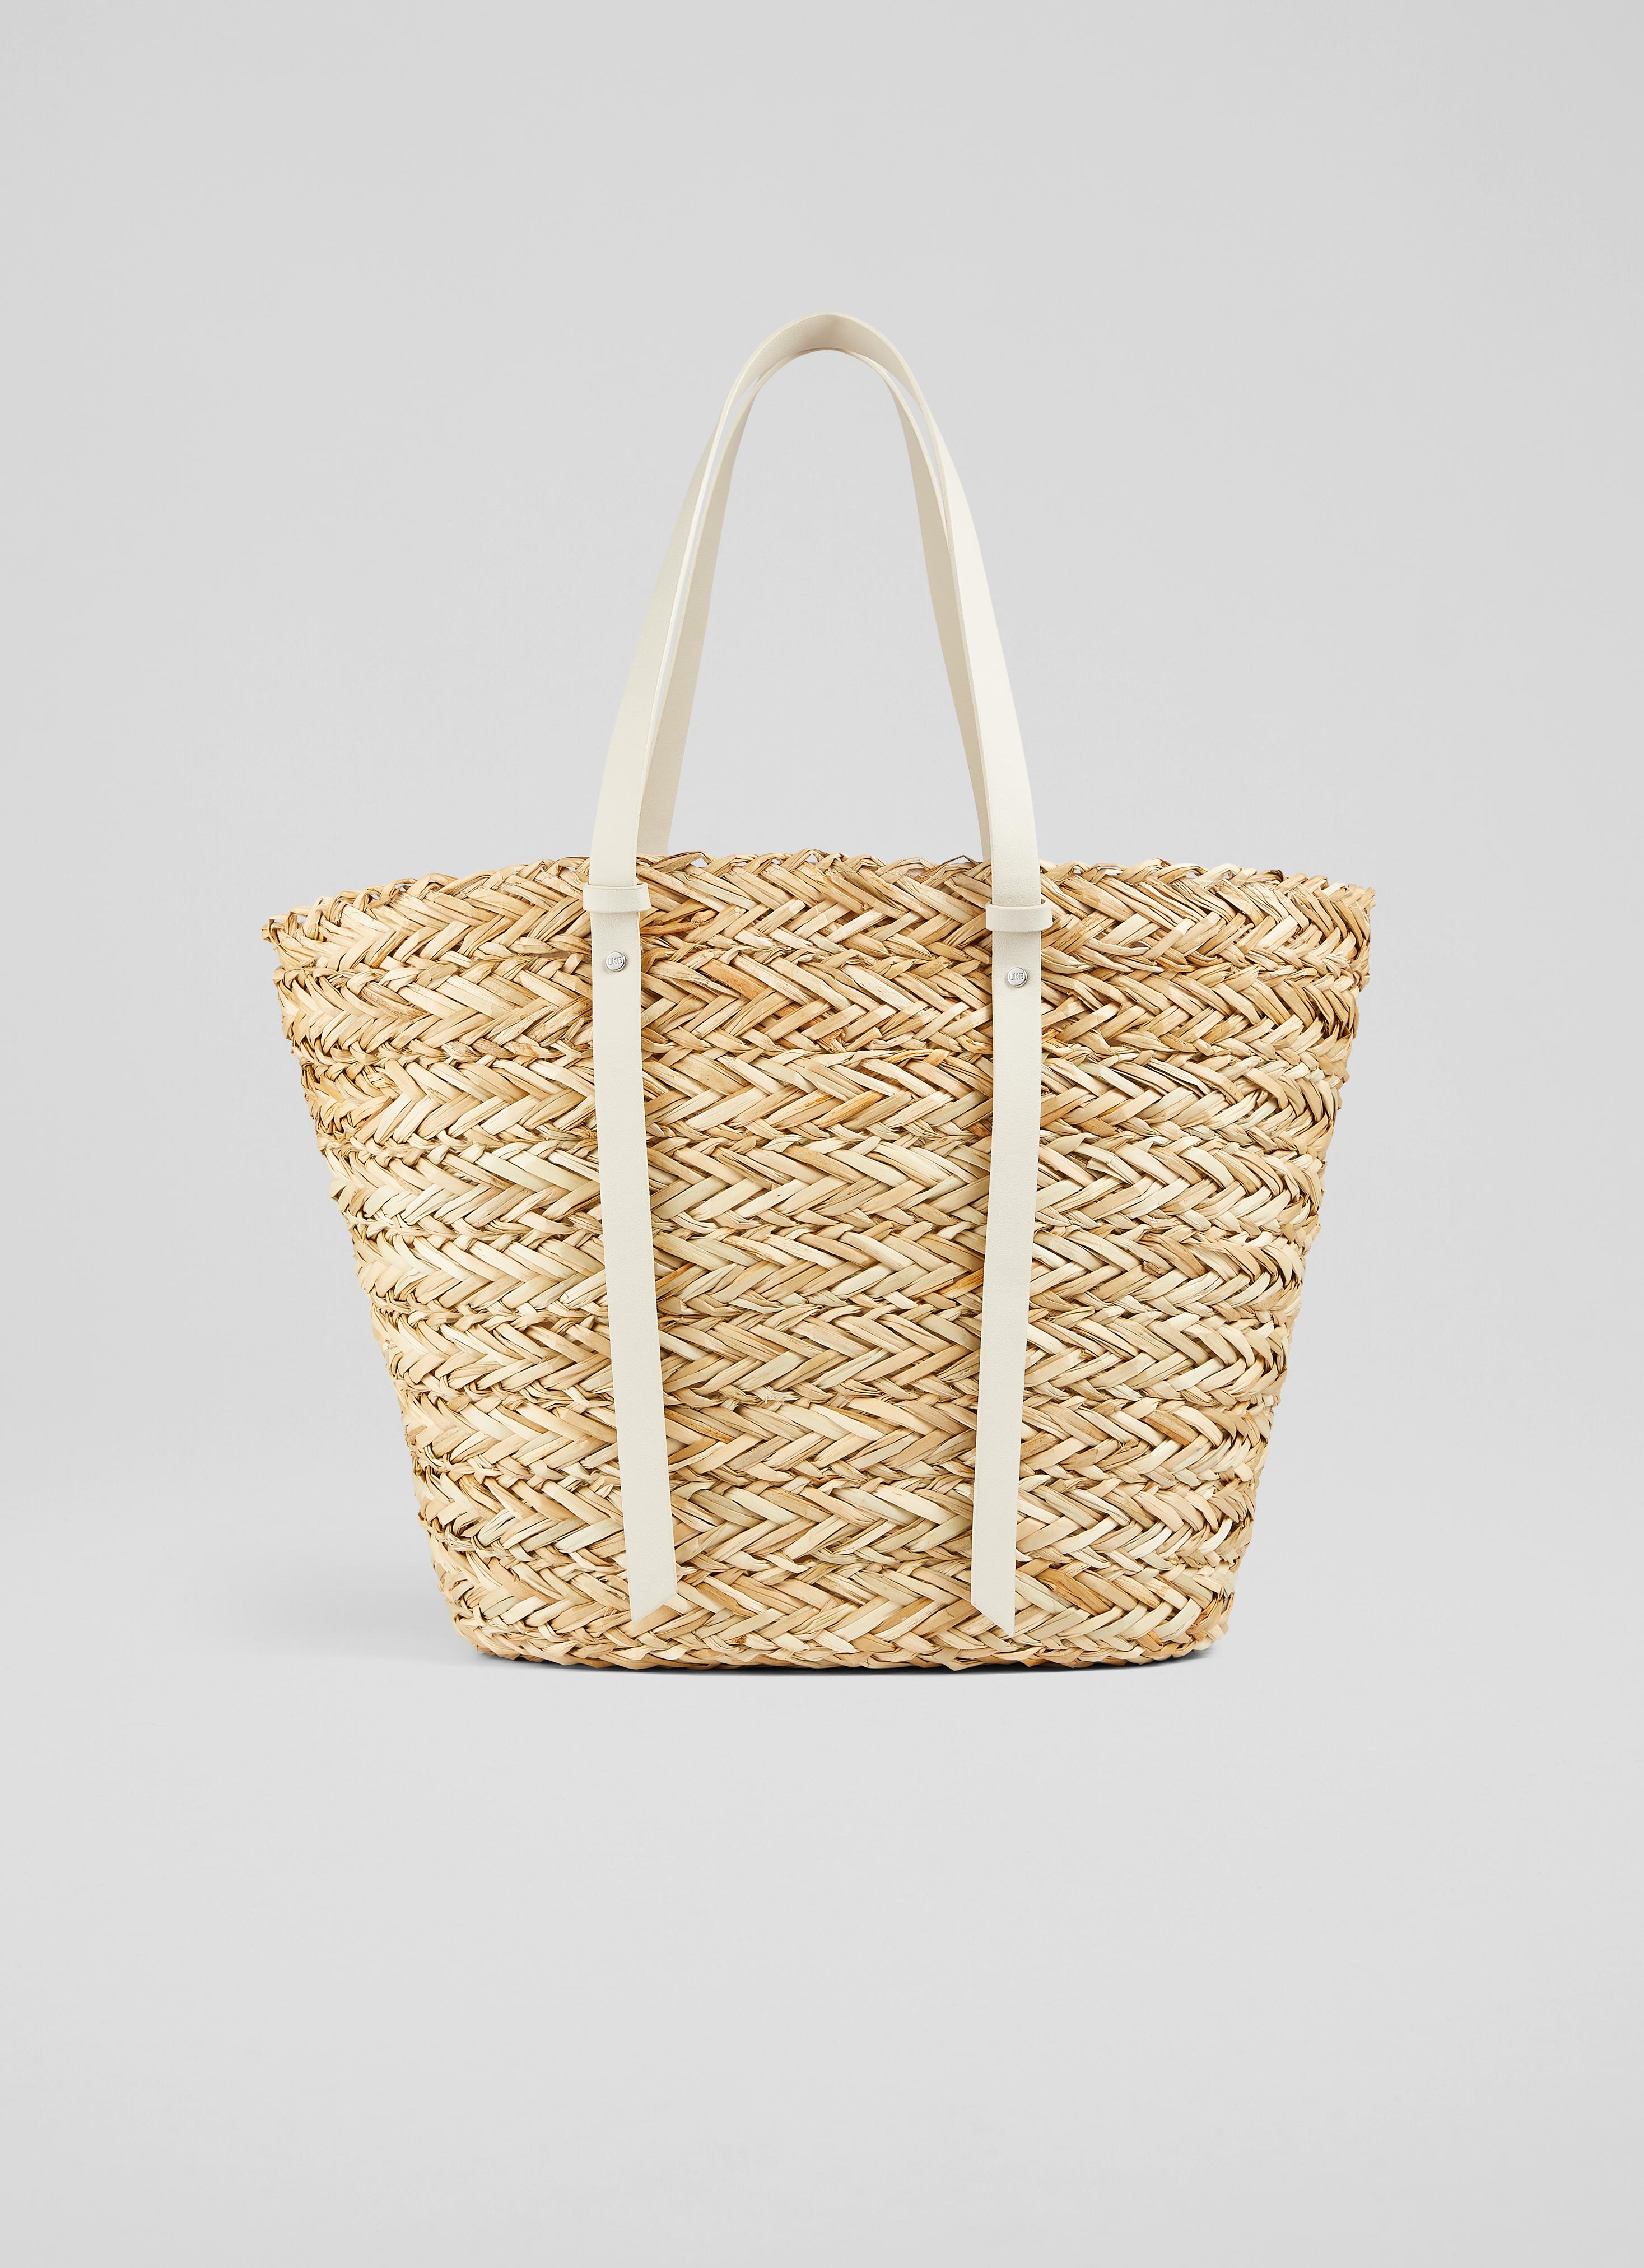 L.K.Bennett Viola Natural Straw Cream Handles Basket Bag White Natural, White Natural